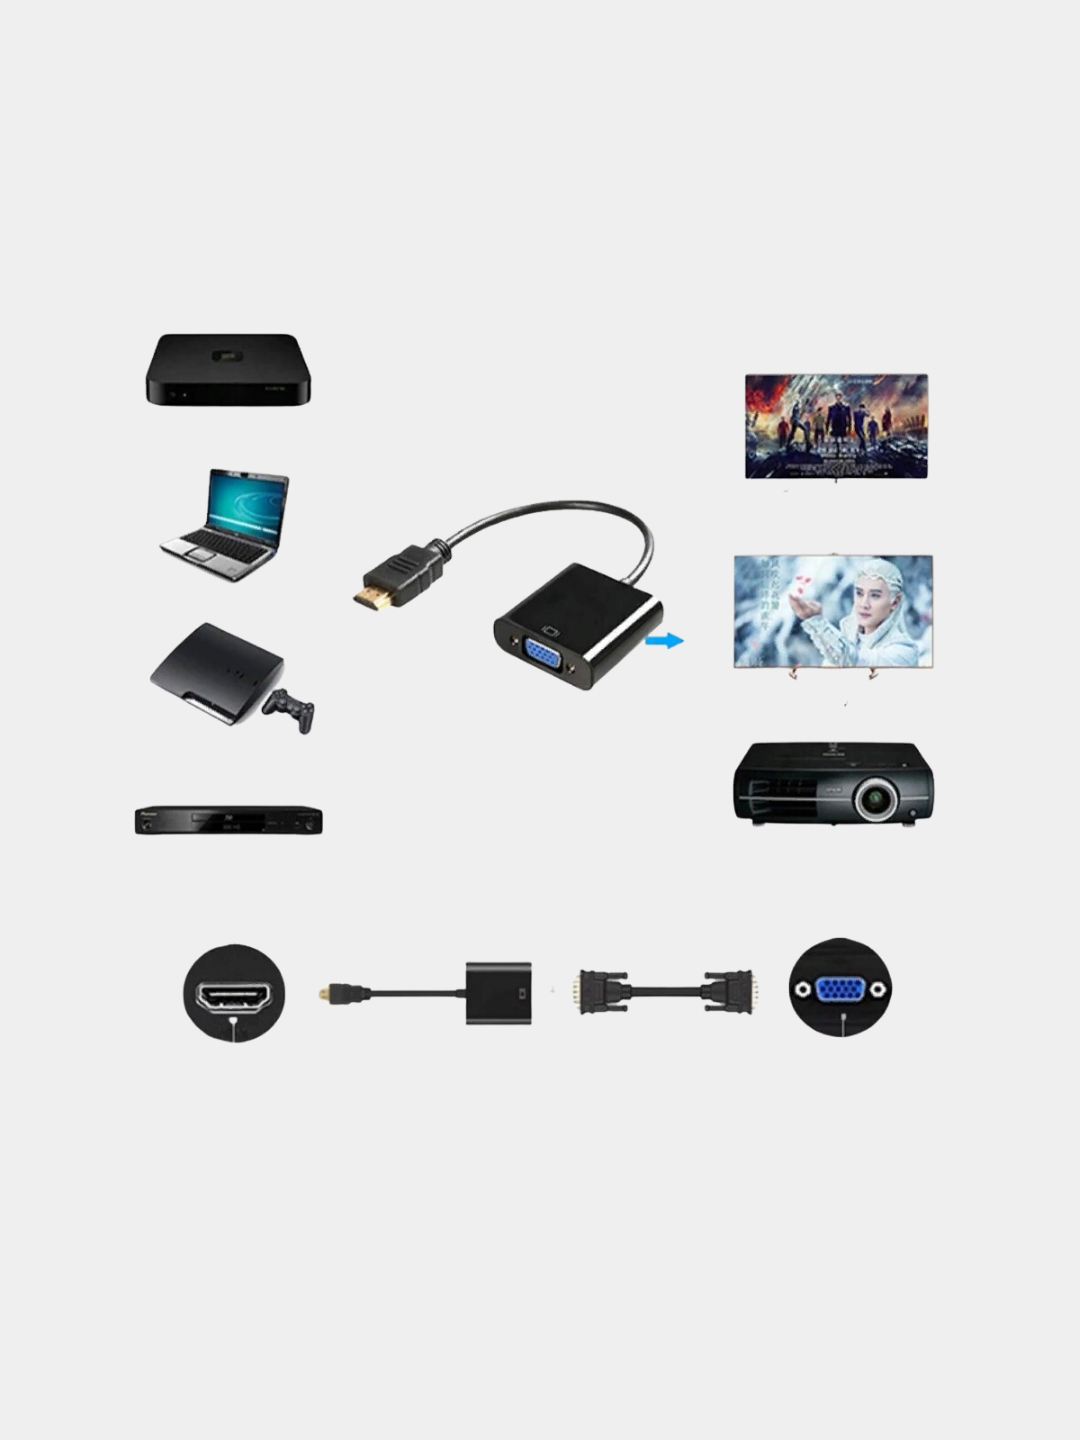 -переходник HDMI-VGA для подключения монитора, проектора, адаптер .